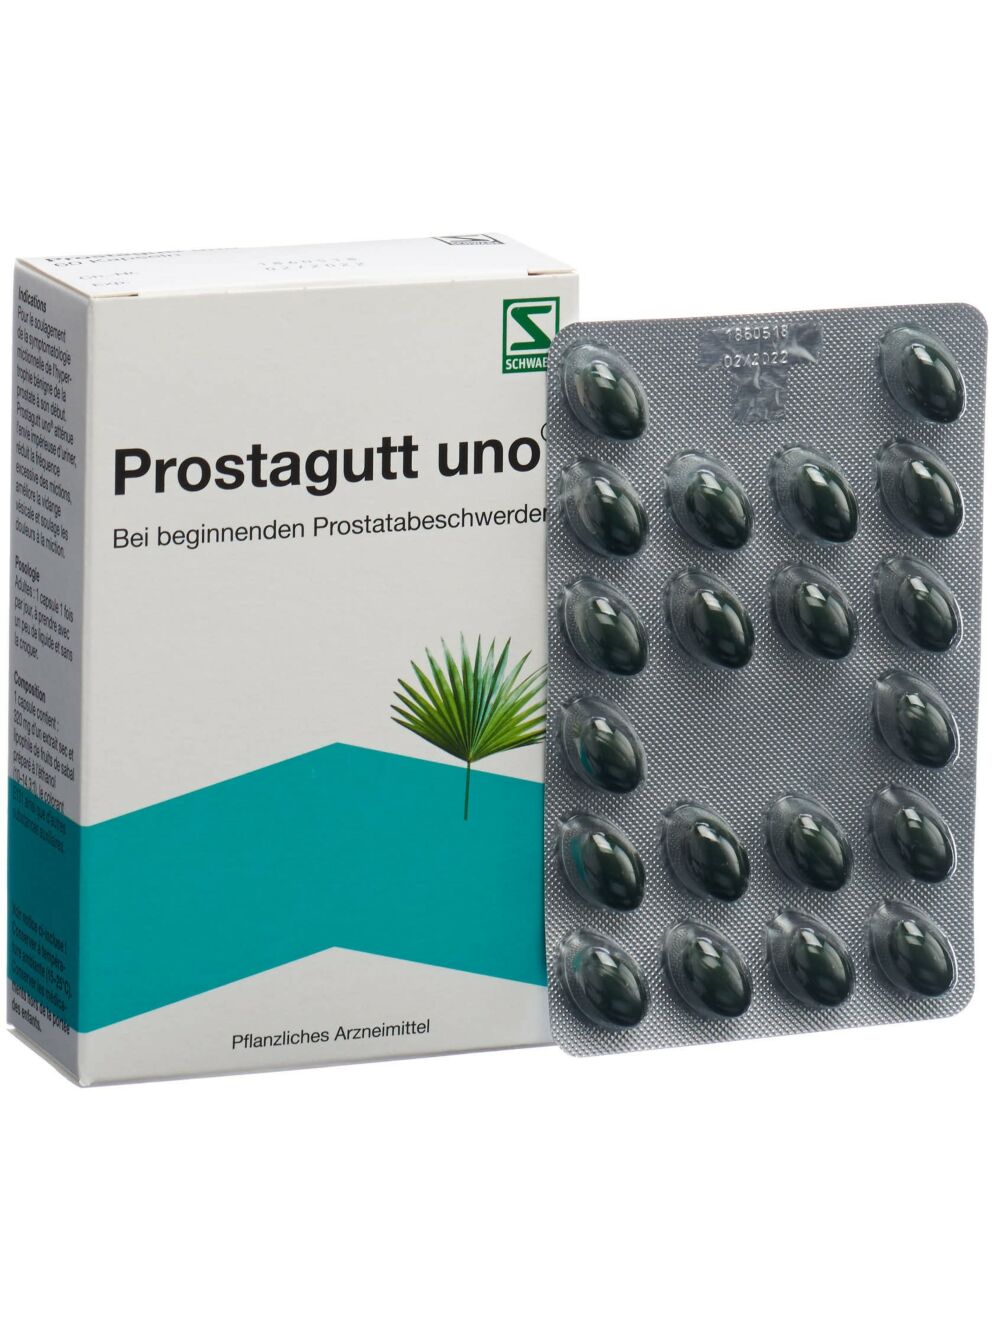 Viagra beim ersten mal | Kaufen direkt aus Deutschland.